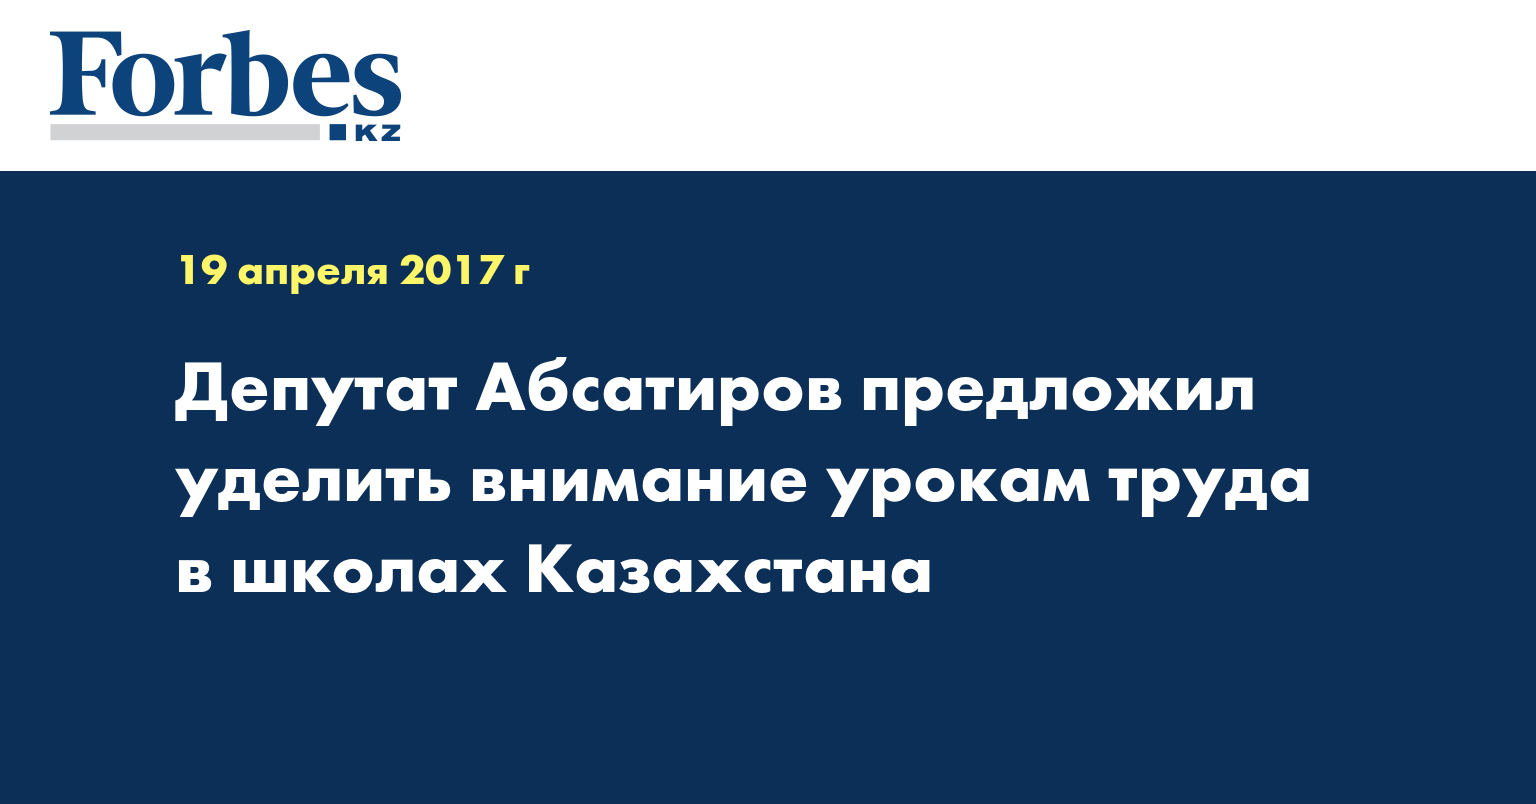 Депутат Абсатиров предложил уделить внимание урокам труда в школах Казахстана